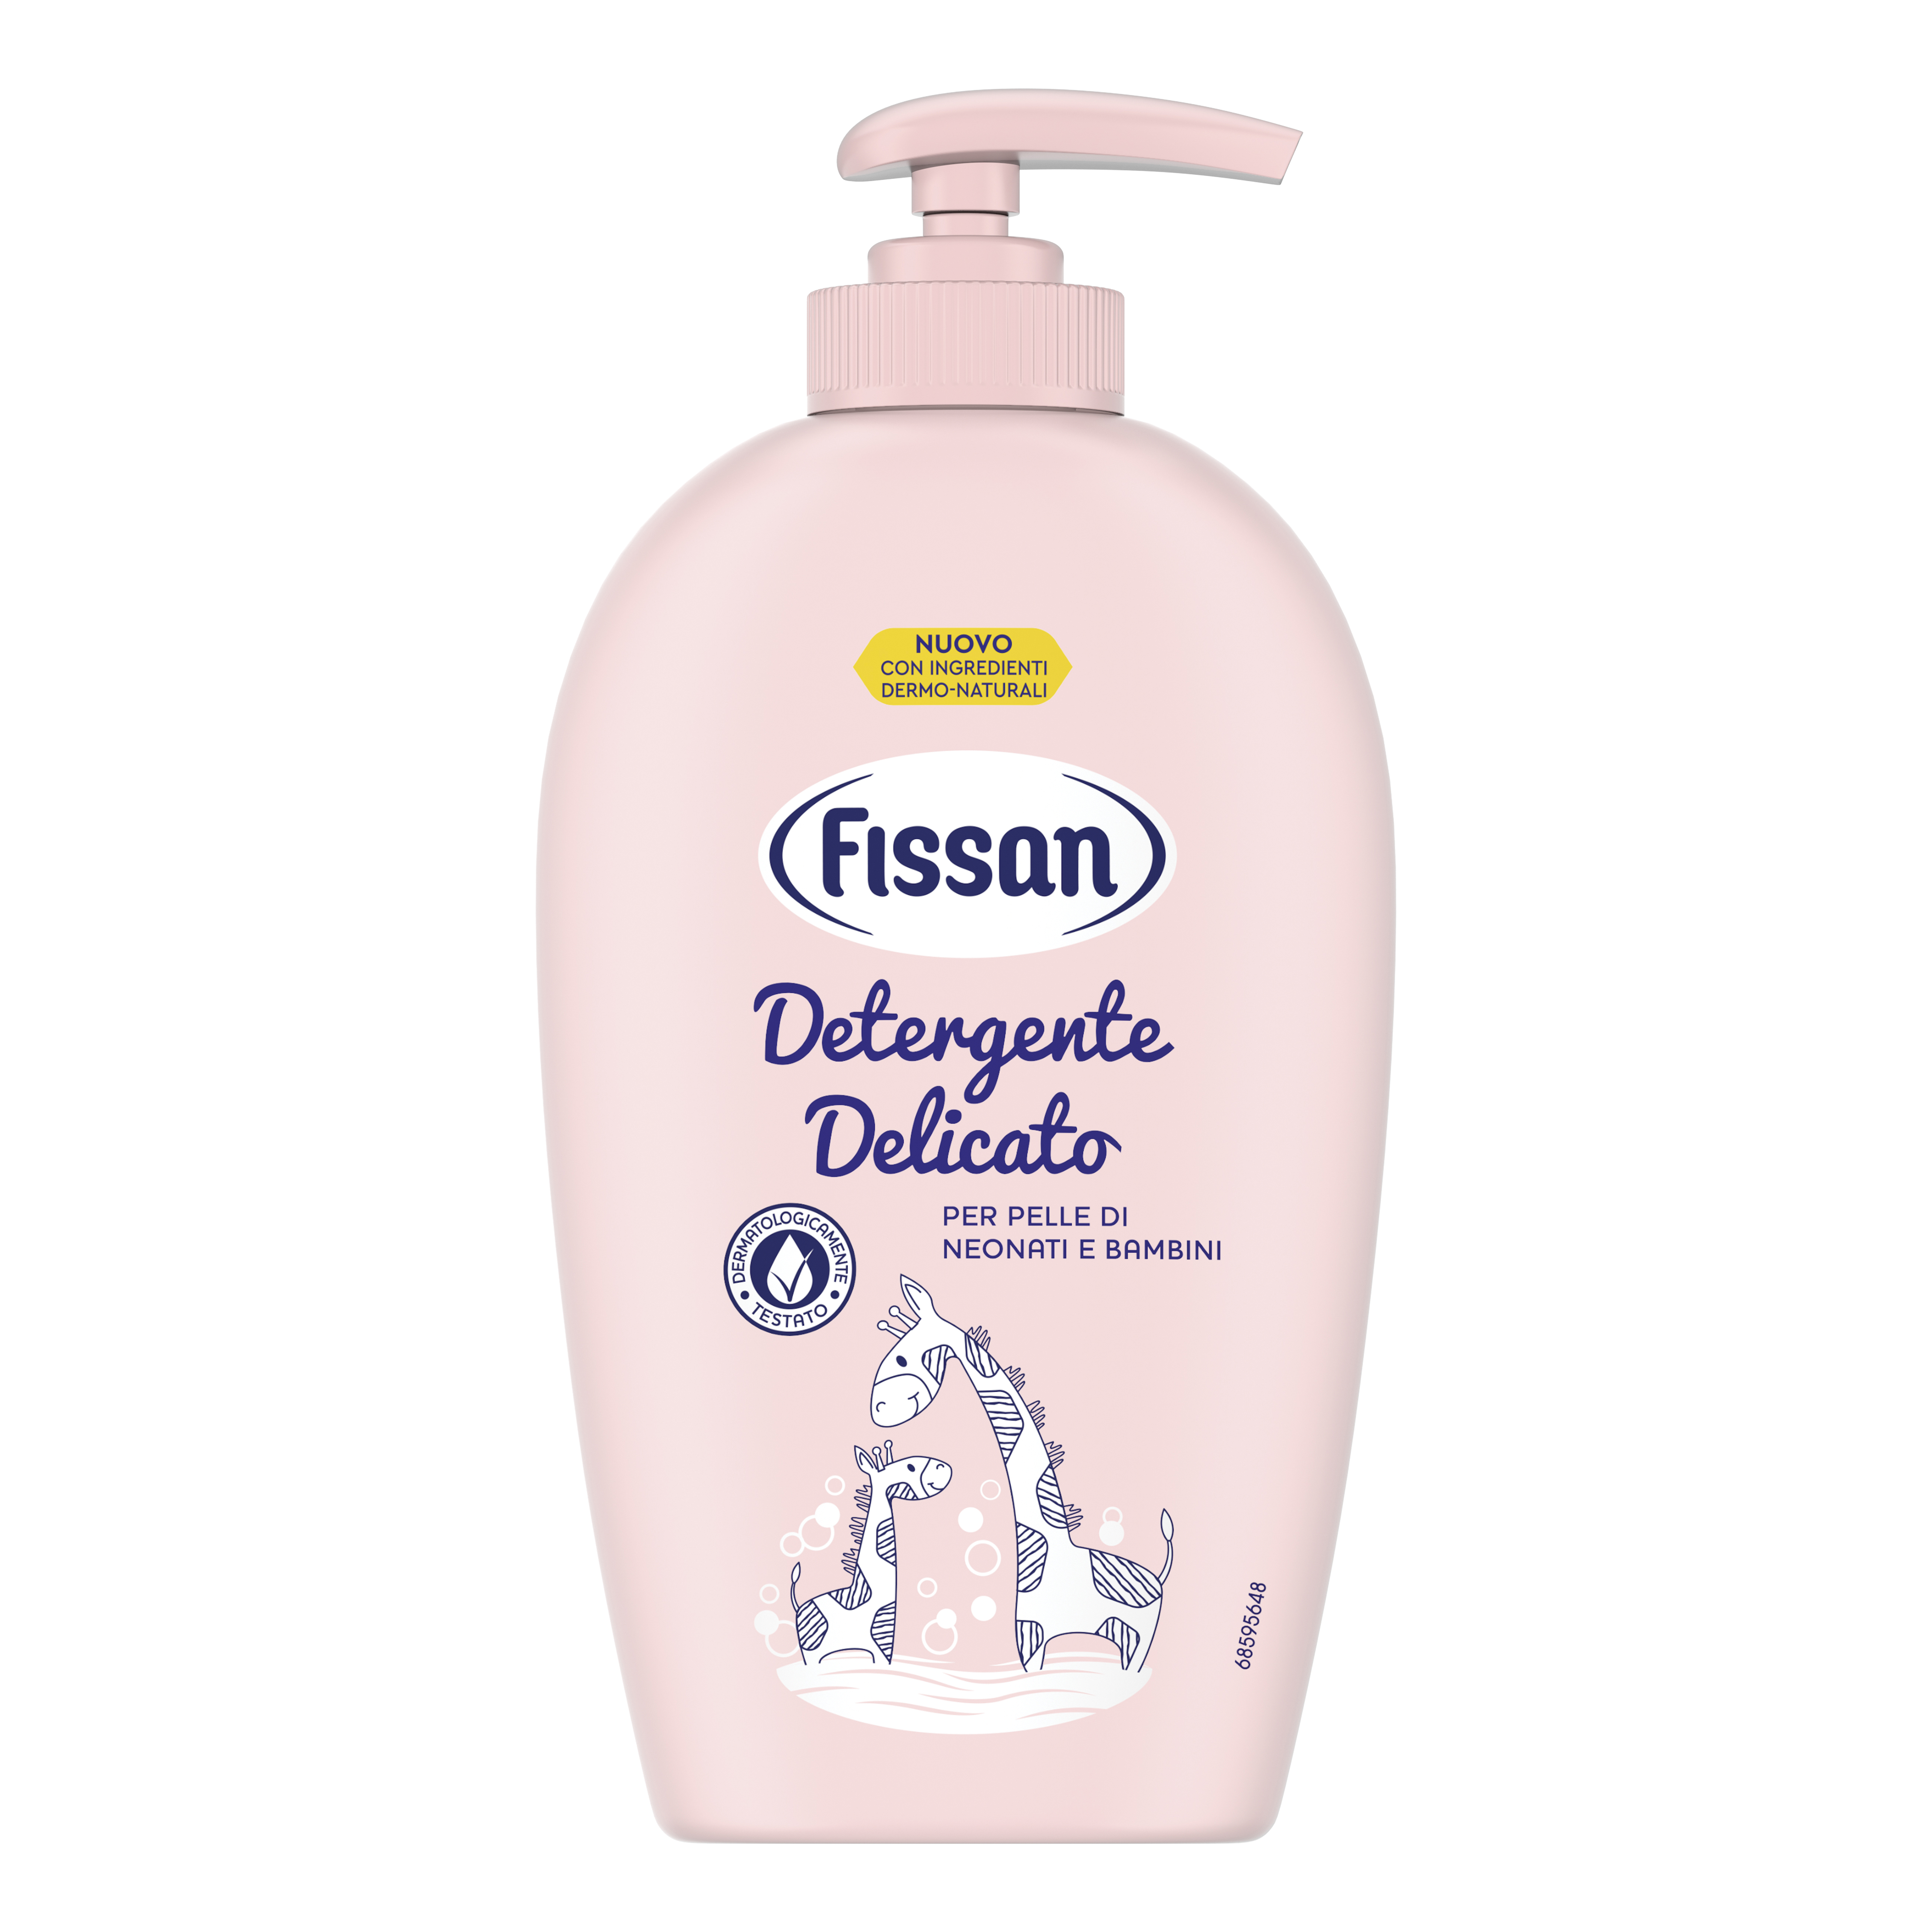 Fissan Shampoo Anti-Lacrime Bambini e Neonati 200 ml 